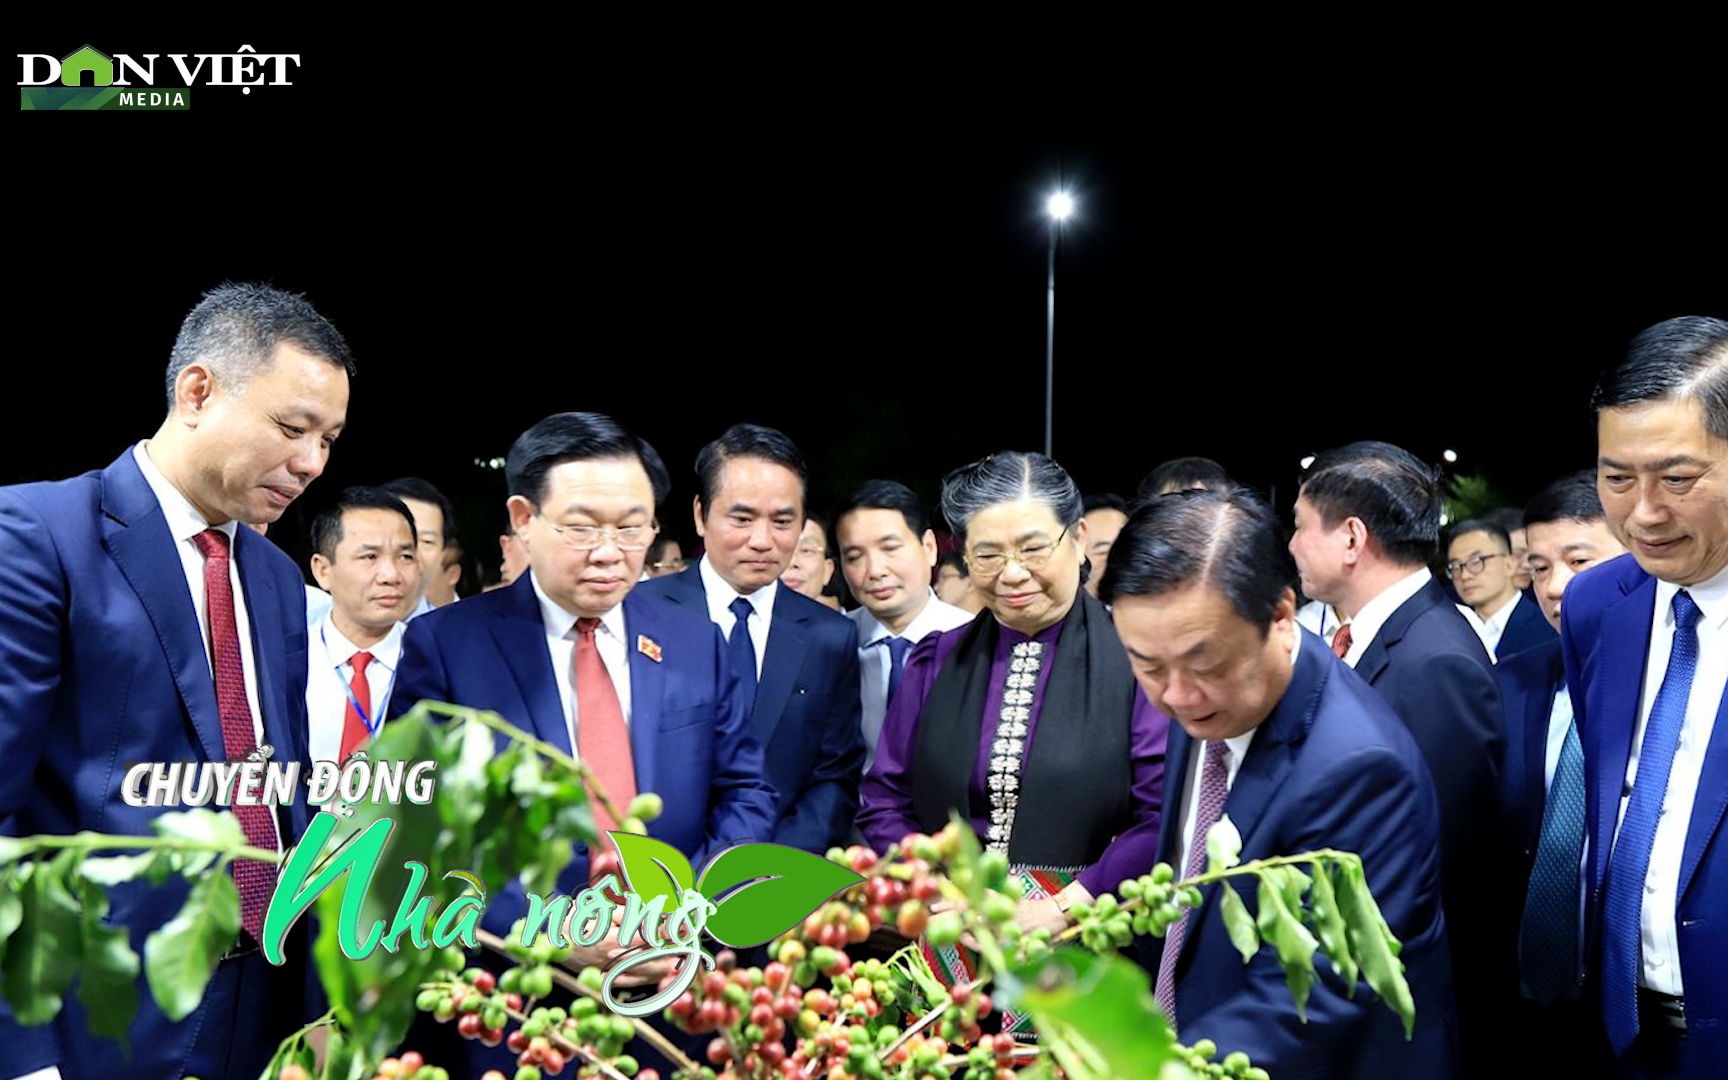 Chuyển động Nhà nông 21/10: Chủ tịch Quốc hội Vương Đình Huệ dự khai mạc Lễ hội cà phê tại Sơn La